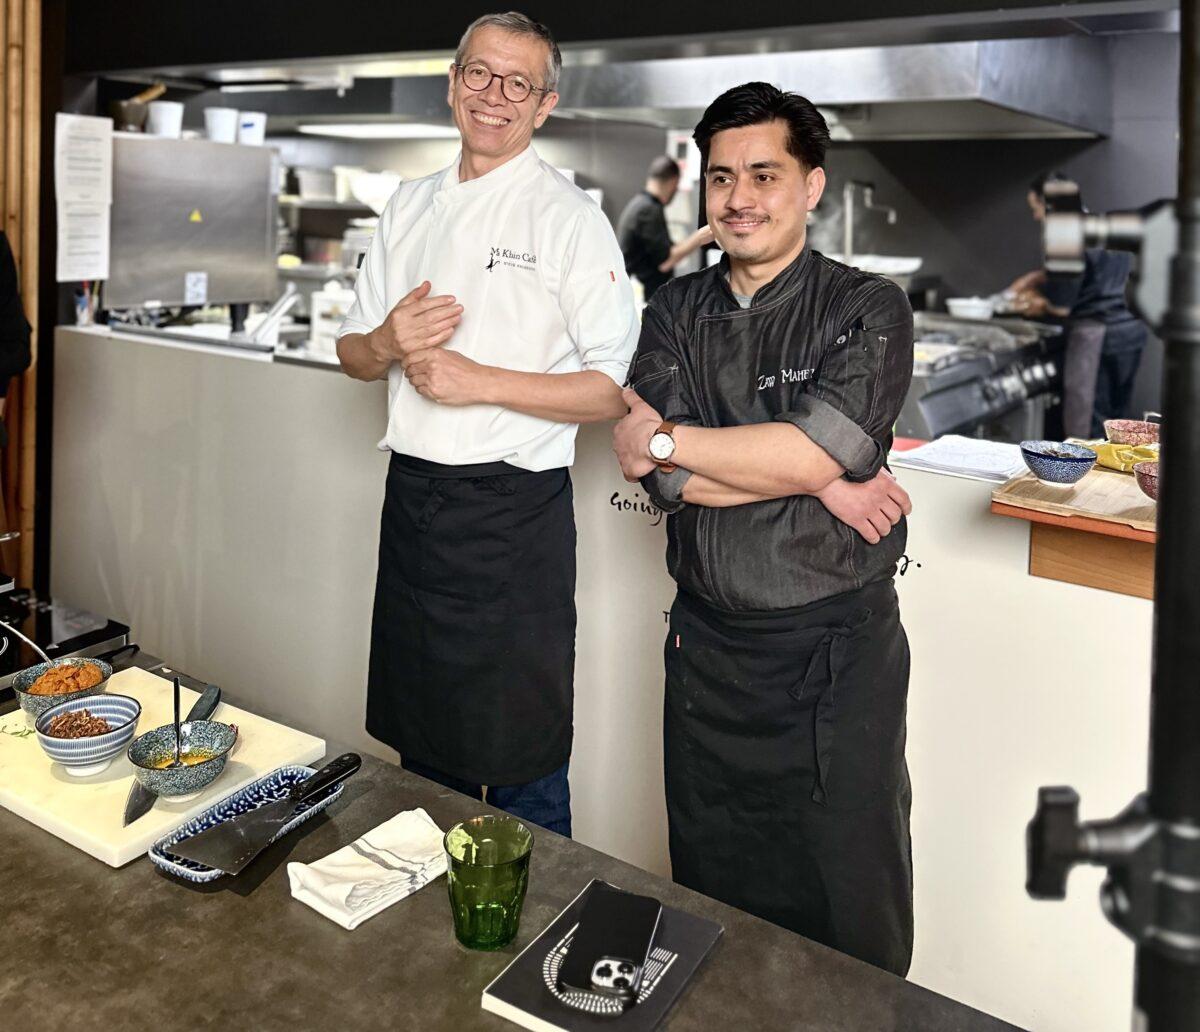 Steve Anderson y Zaw Mahesh - show cooking cocina birmana en Valencia